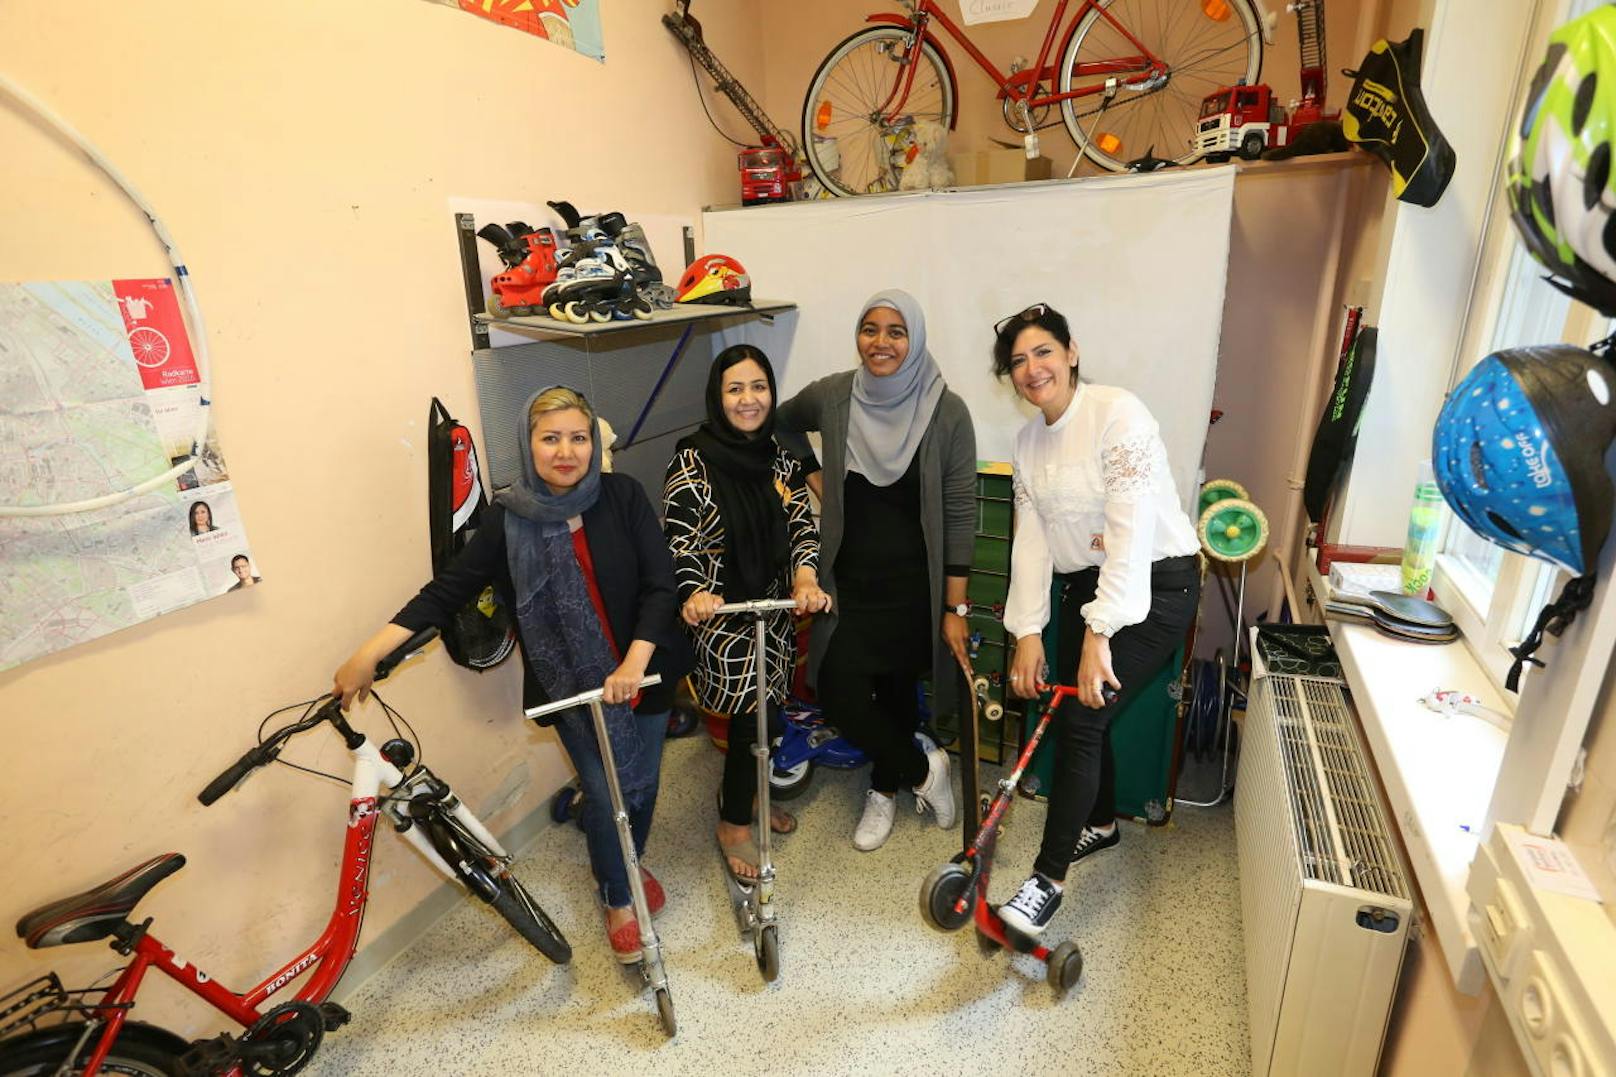 Lässig: In einem eigenen Raum können sich die Bewohner des Flüchtlingsquartiers in Hietzing Roller, Fahrräder und Co. ausborgen. Im Bild (von links): Bewohnerinnen Fauzia S. und Farideh A., mit den "wieder wohnen"-Mitarbeiterinnen Monika Alamagir und Fatima Jebaile